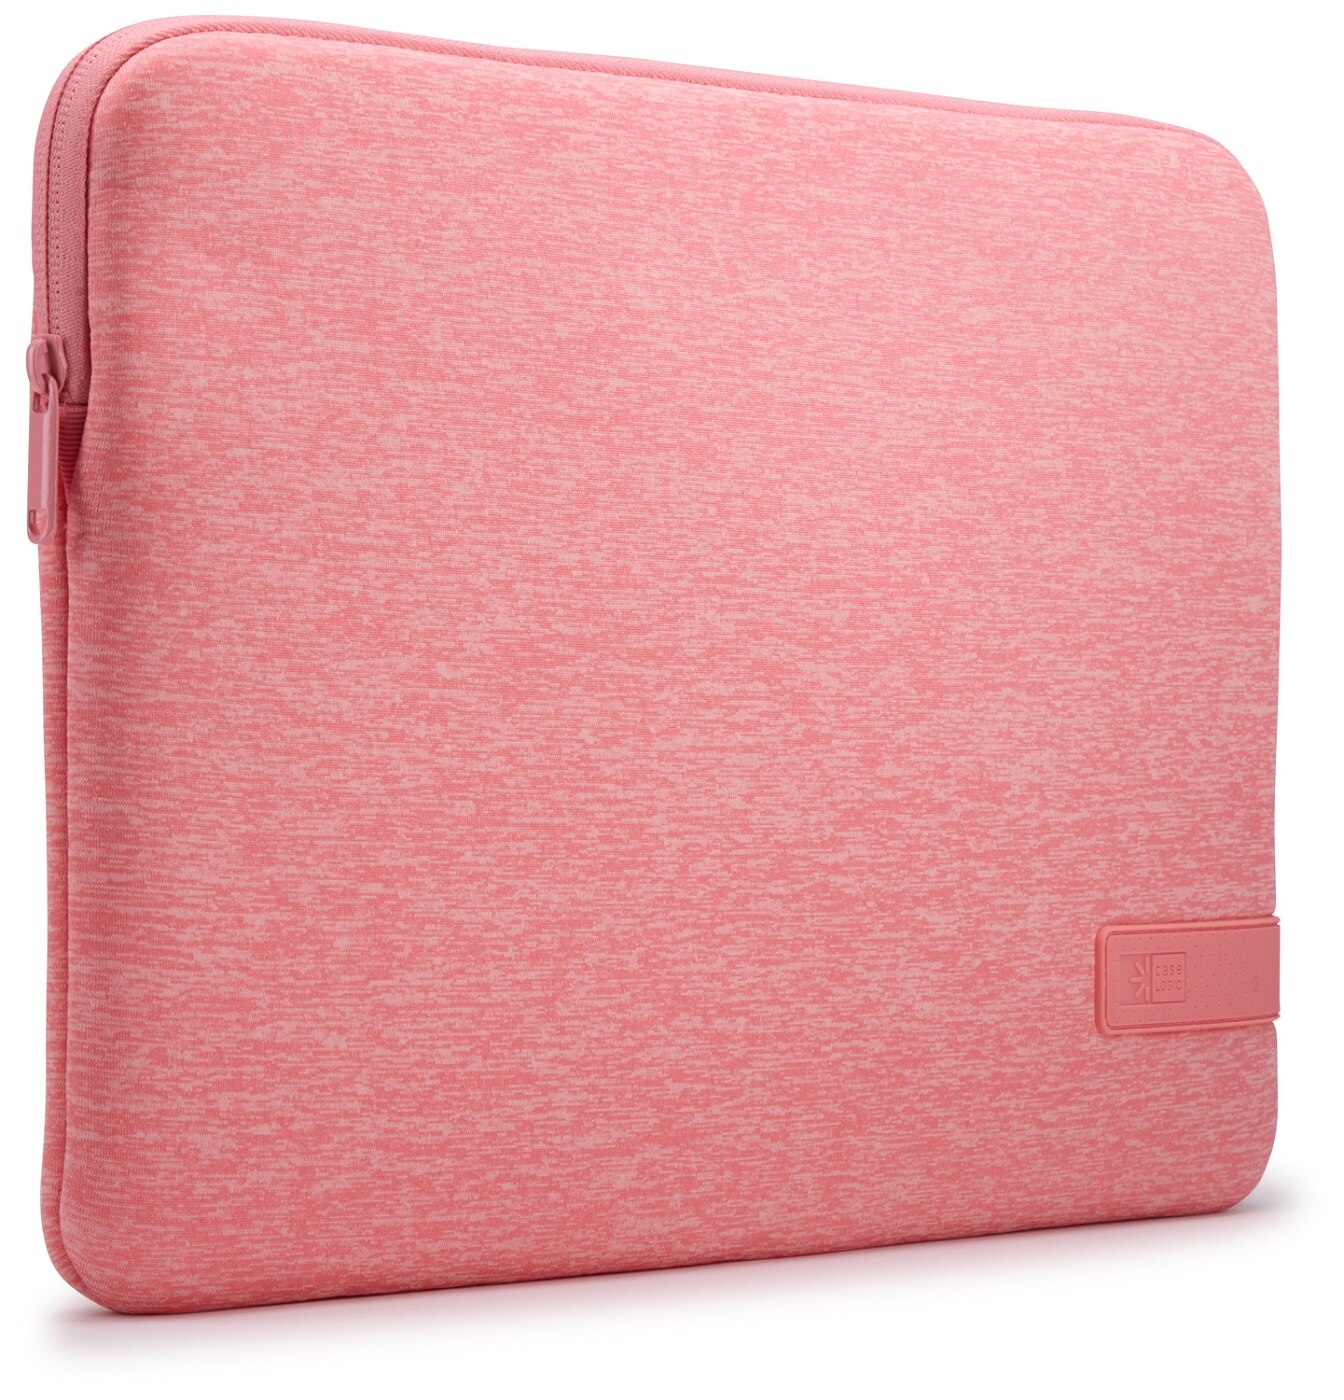 Reflect 14" Memory Foam Laptop Sleeve Pomelo Pink